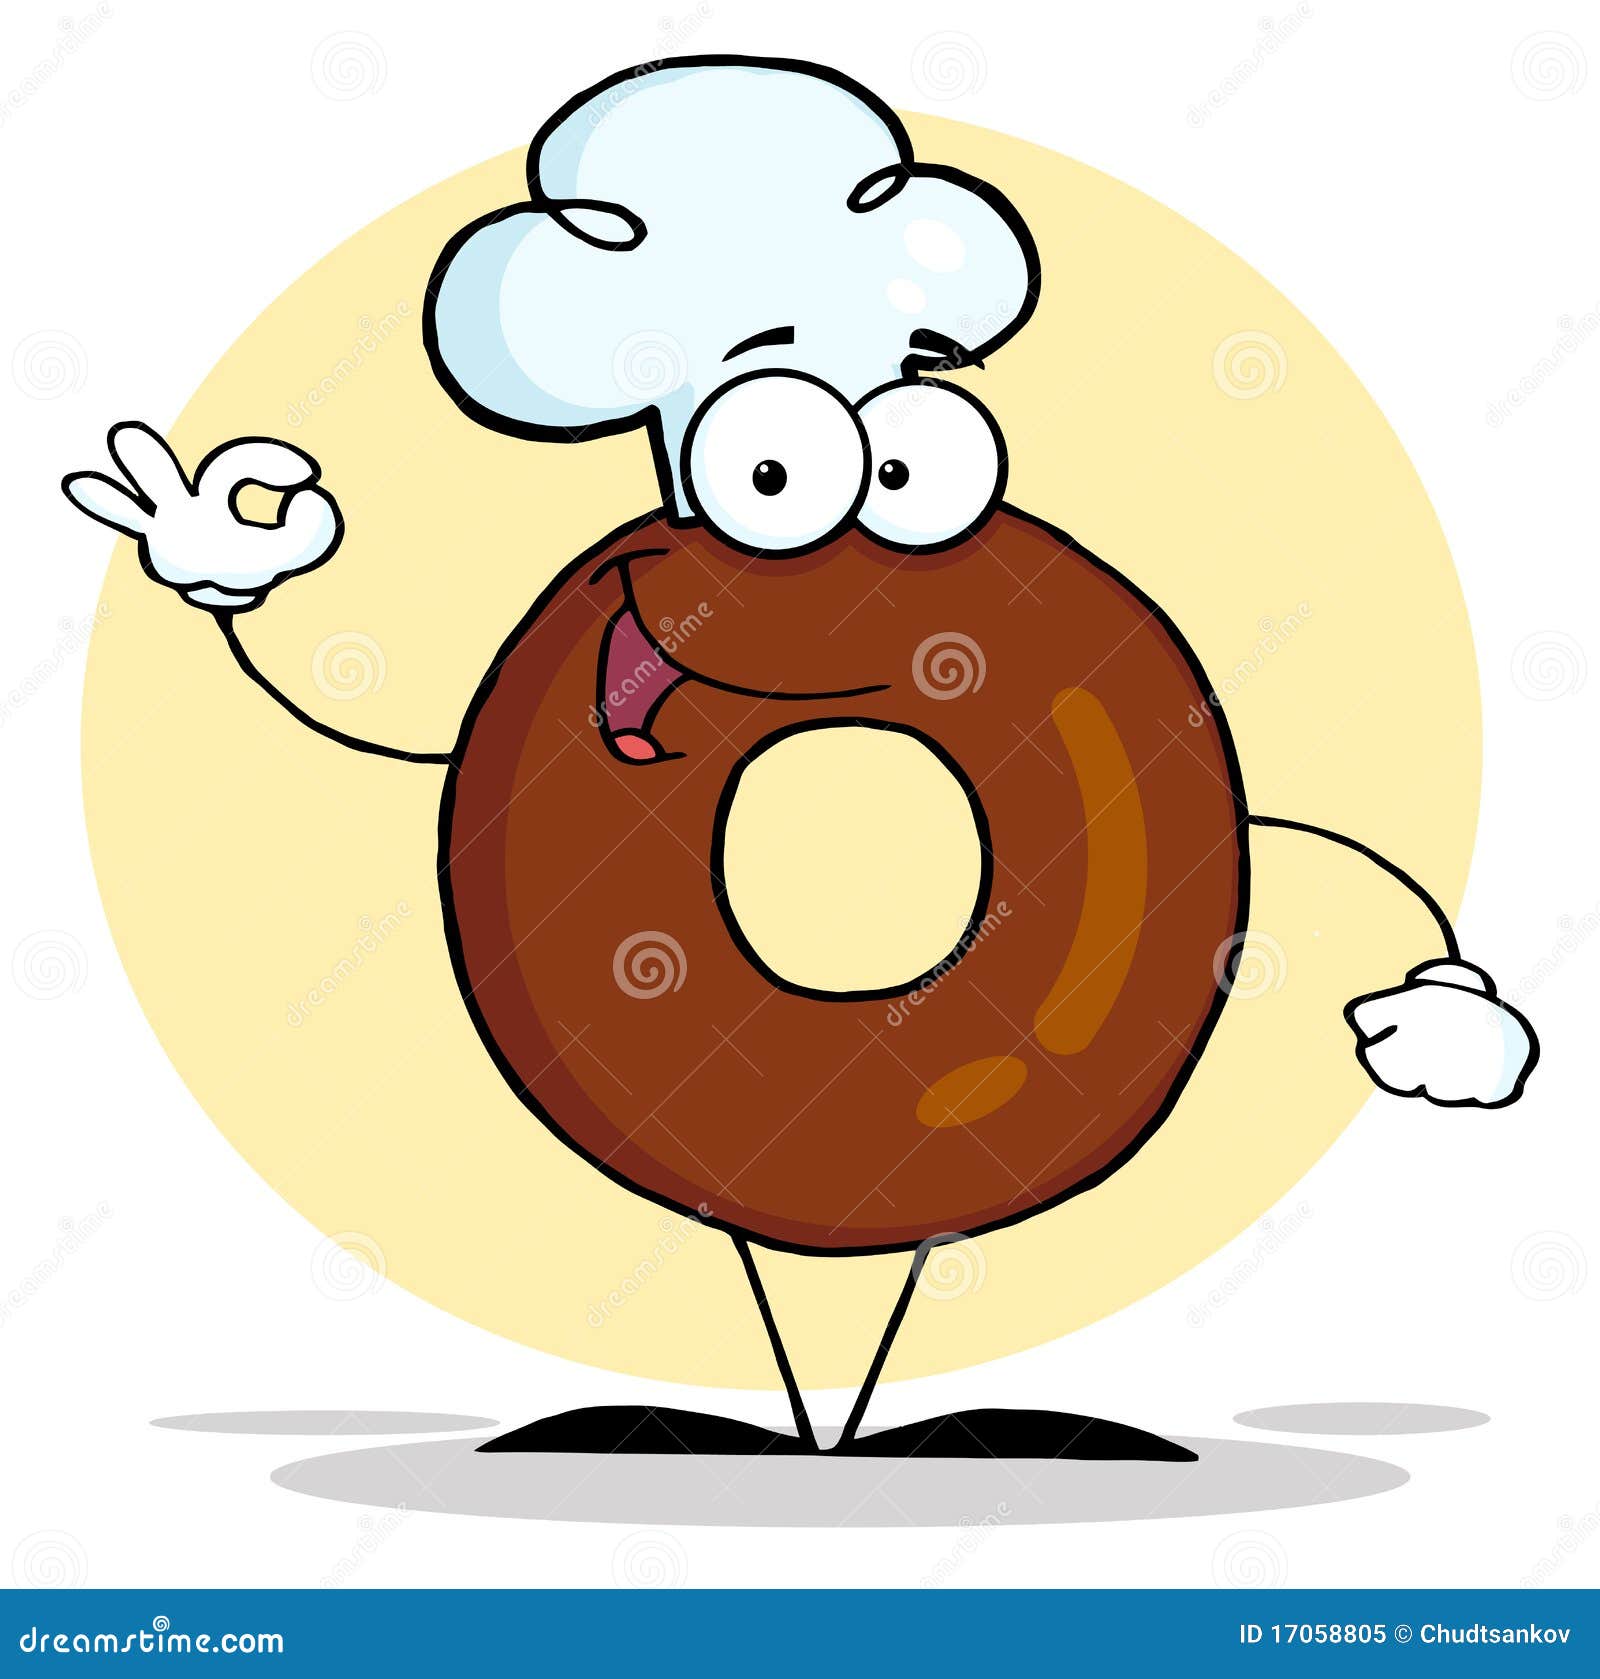 cartoon media: Cartoon Donuts With Faces